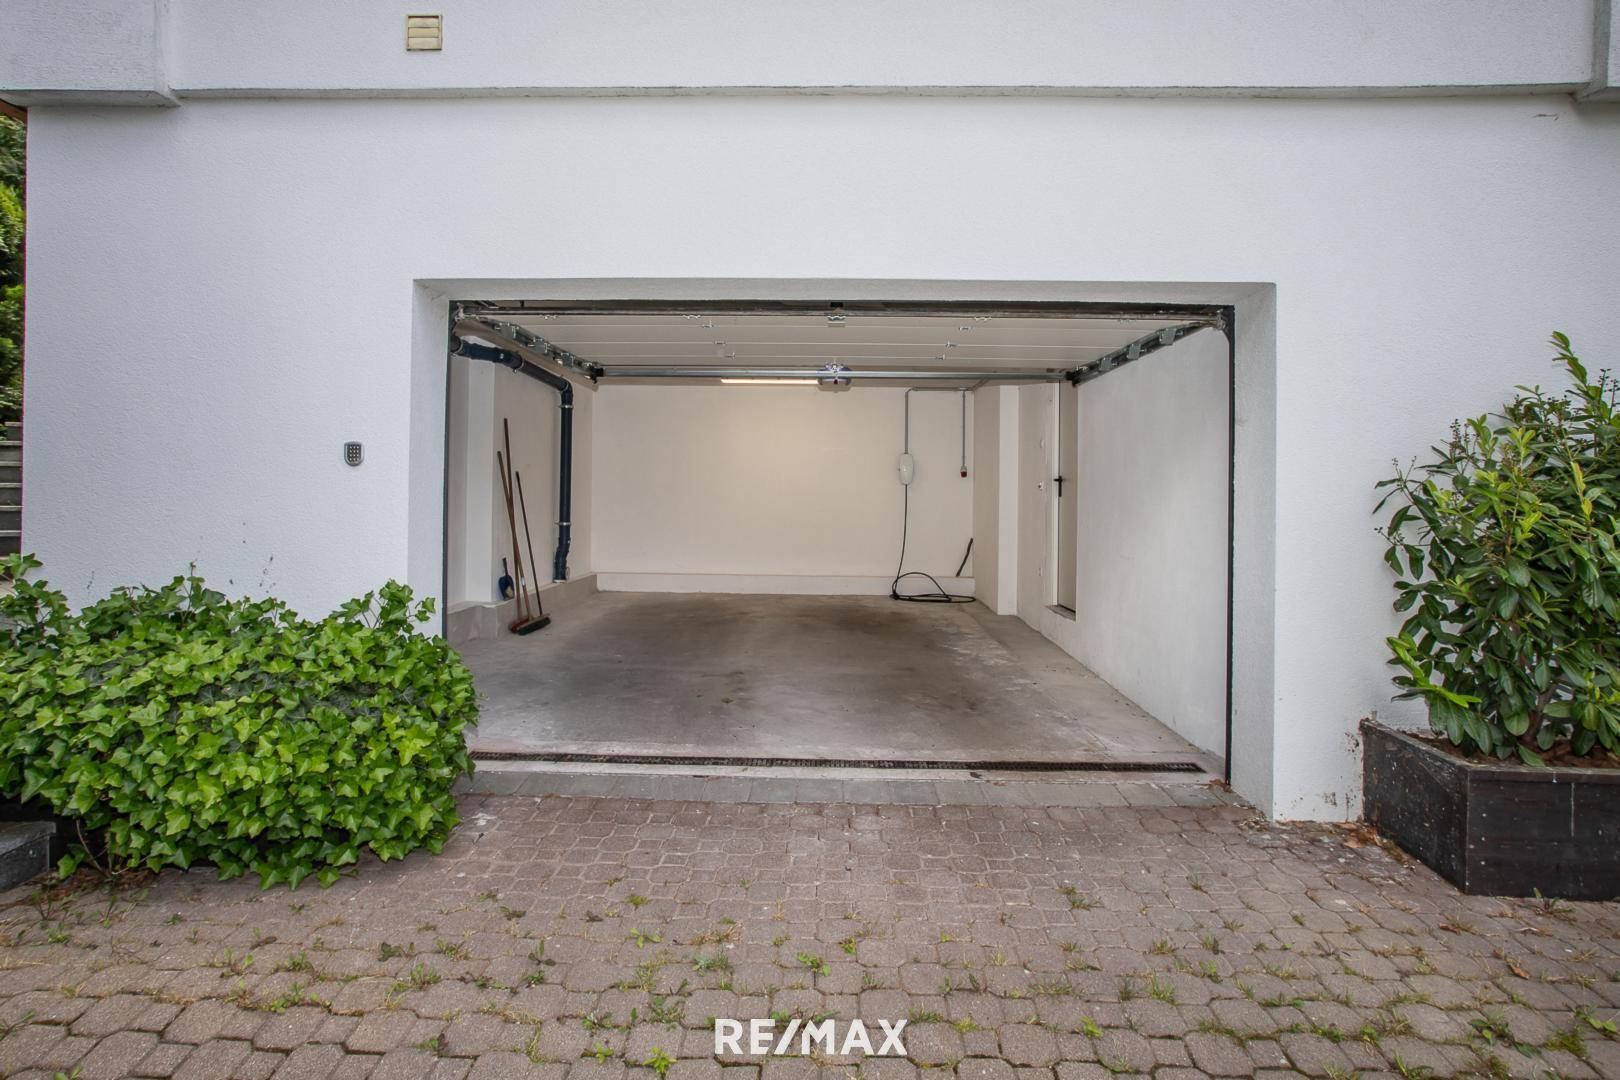 Garage inkl Ladestation für Tesla